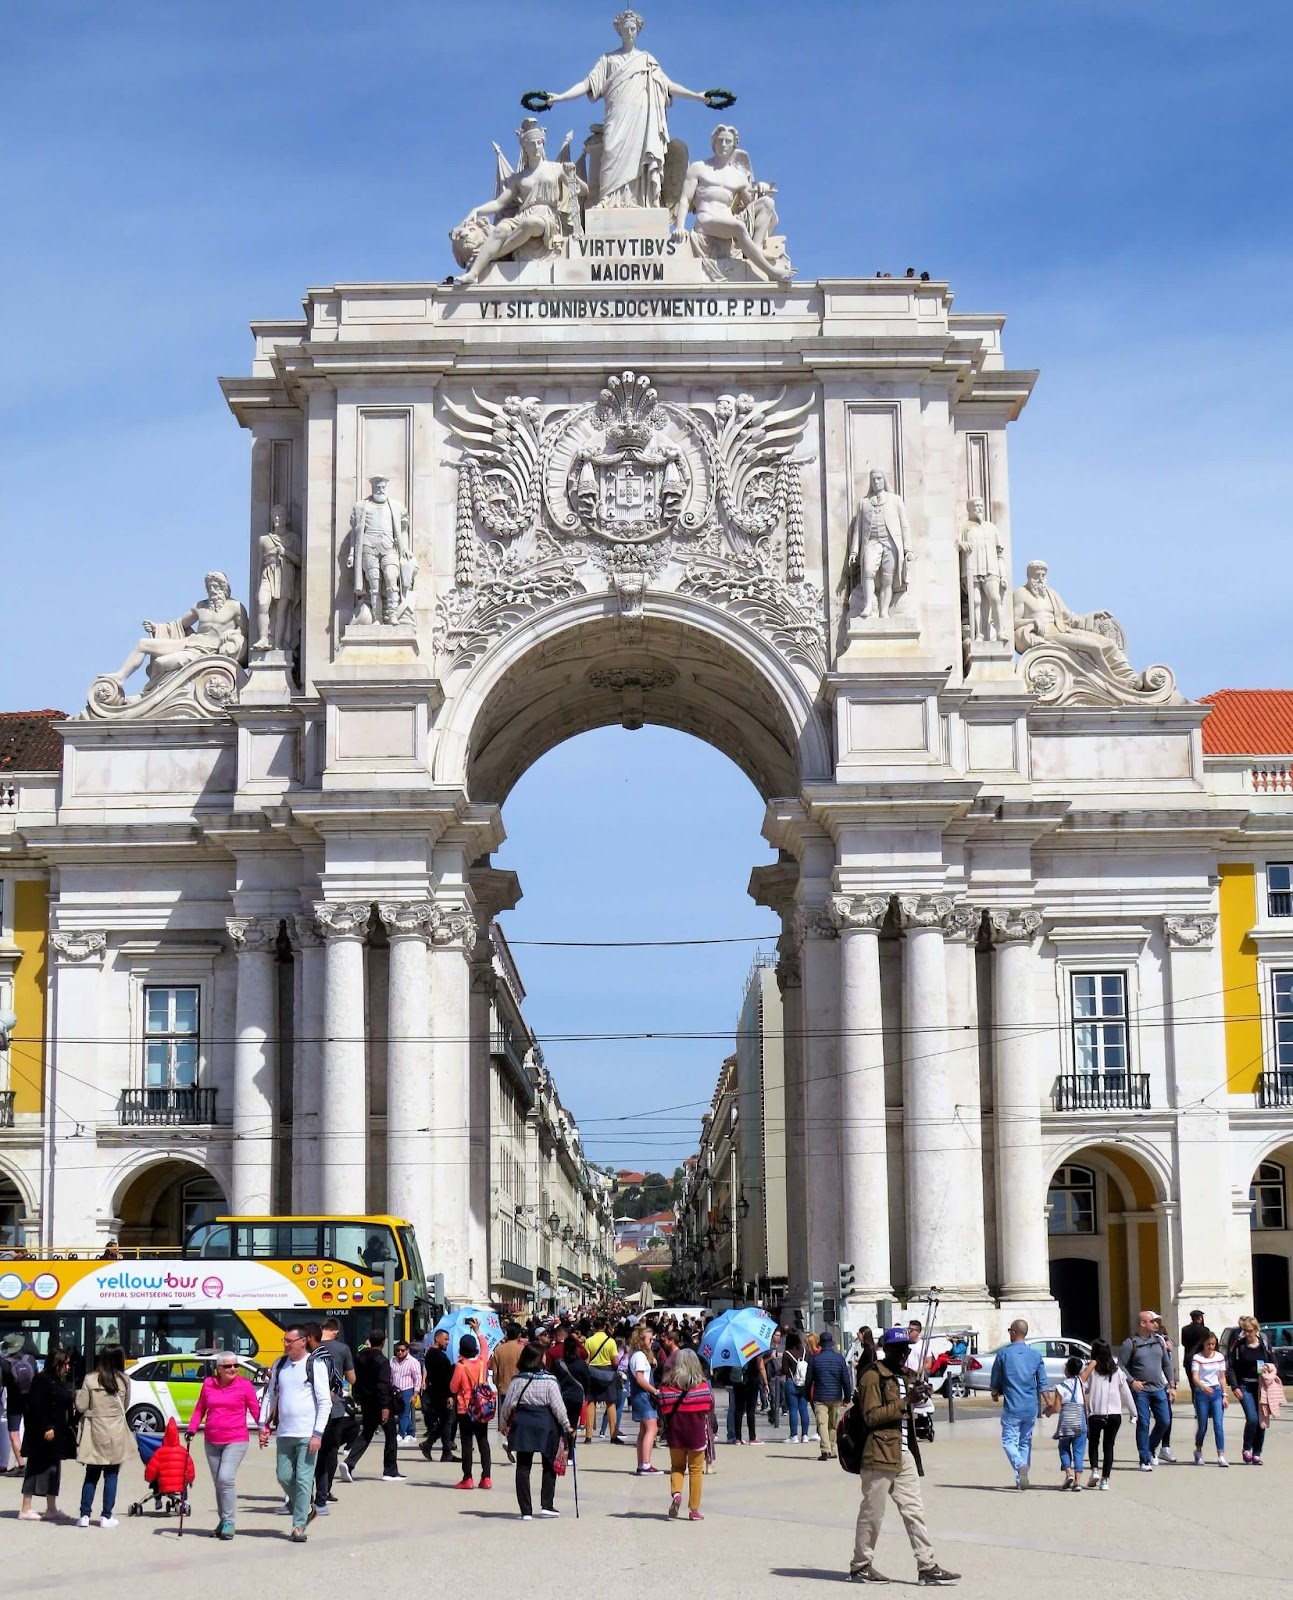 Arco da Rua Augusta, Rua Augusta Arch, landmark of Lisbon, near Praca do Comercio